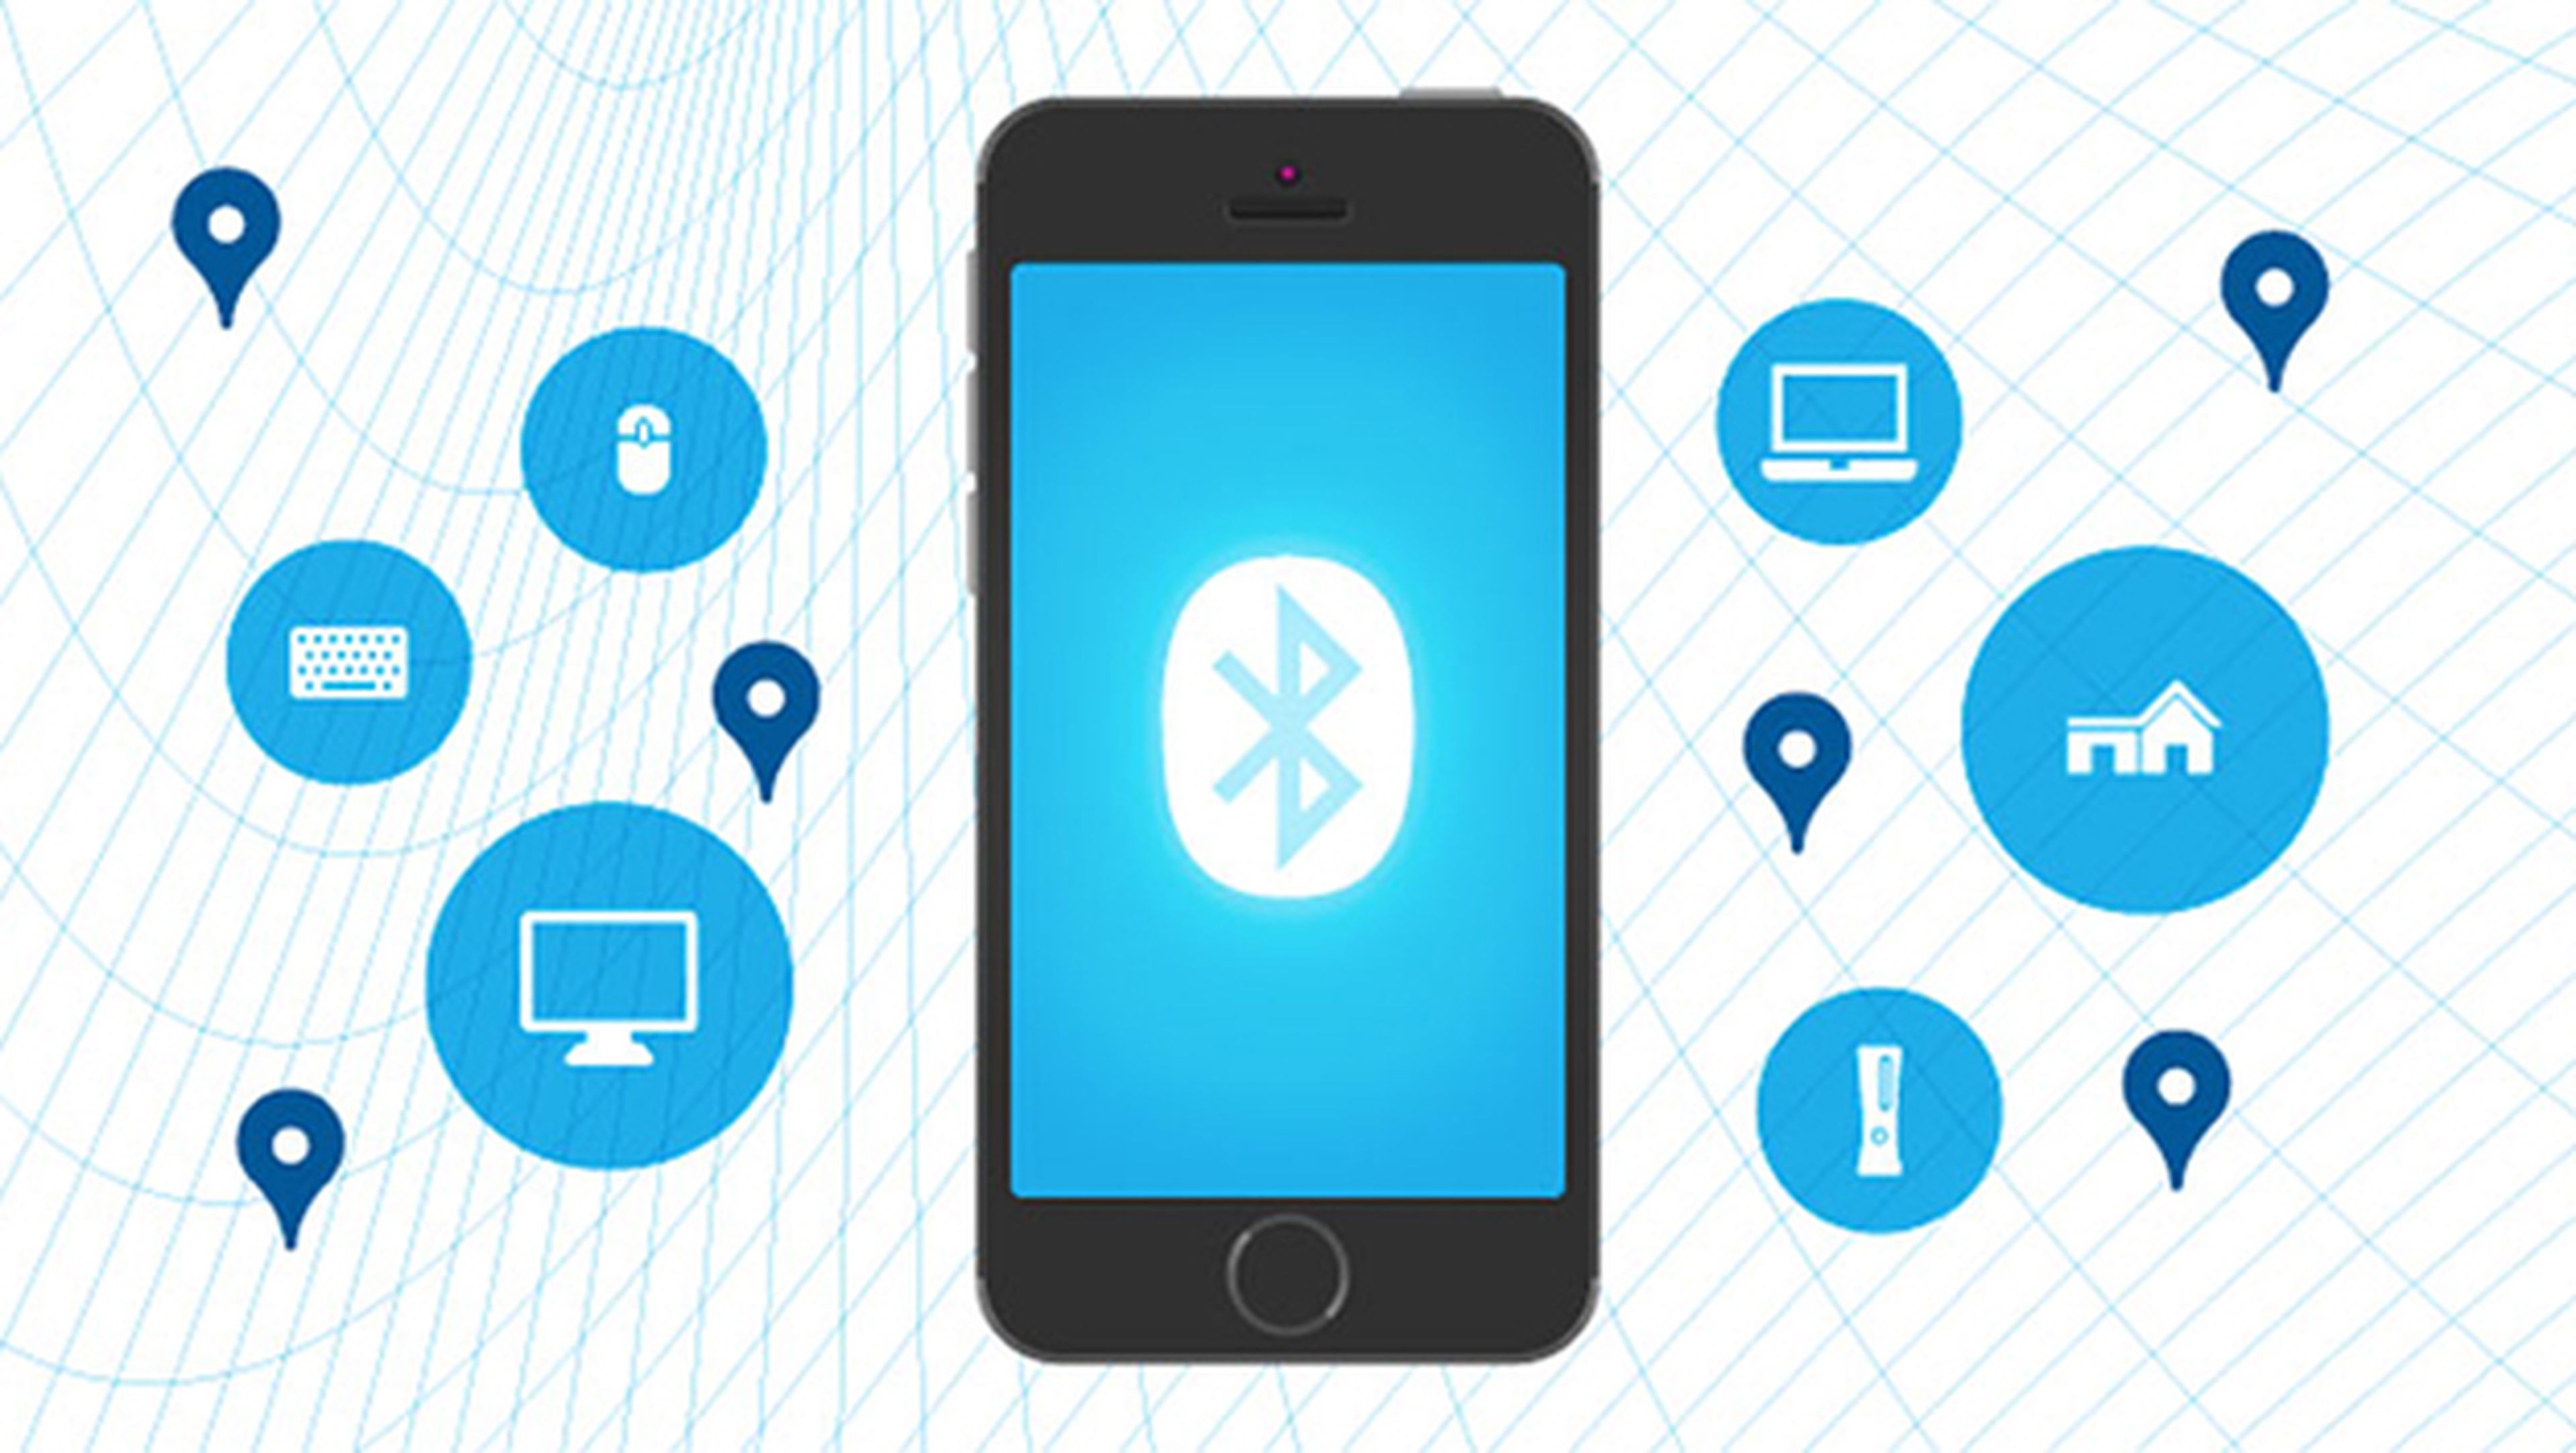 Bluetooth doblará su velocidad y mejorará su alcance en 2016